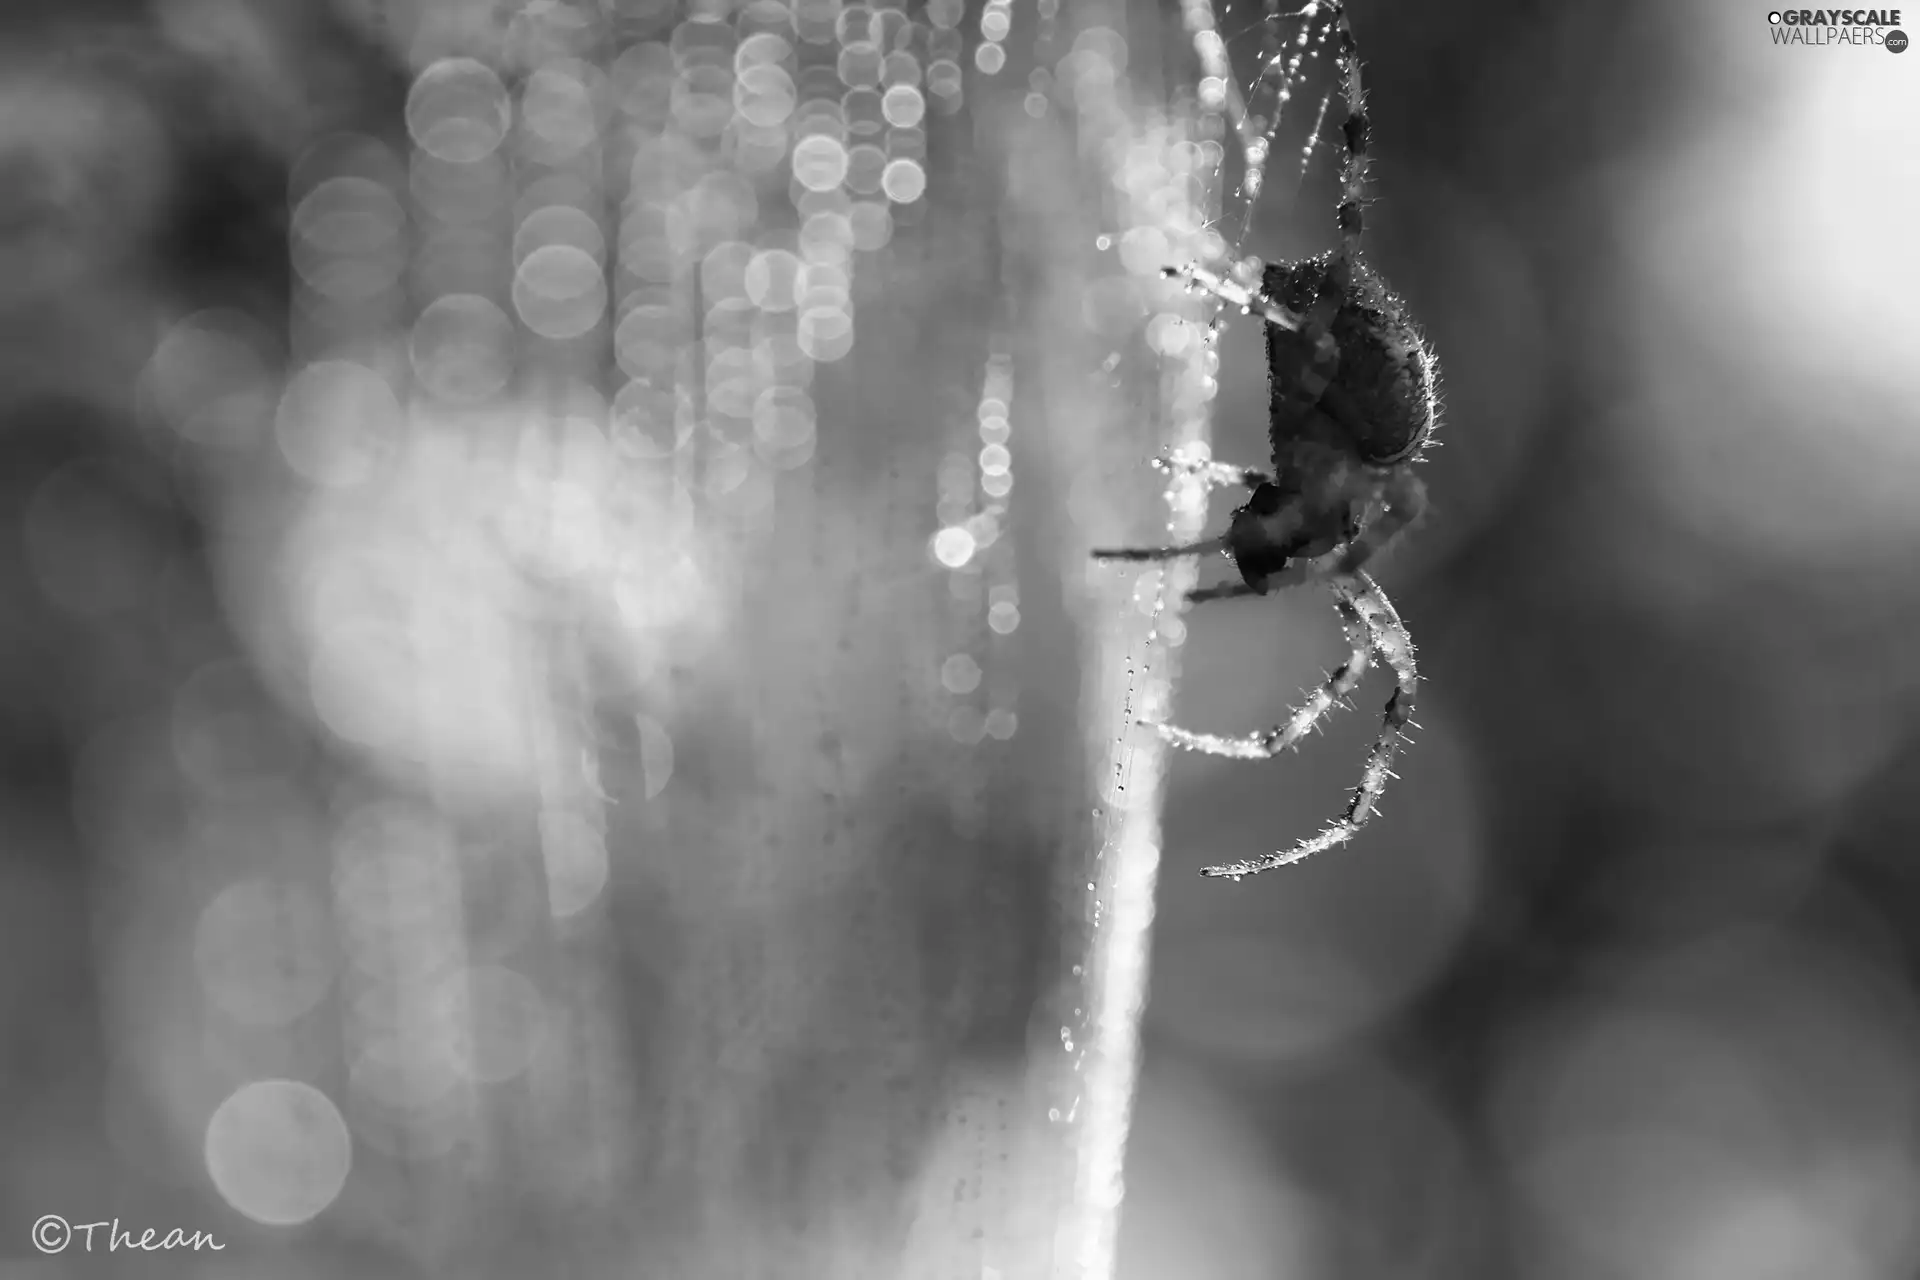 Web, Spider, net